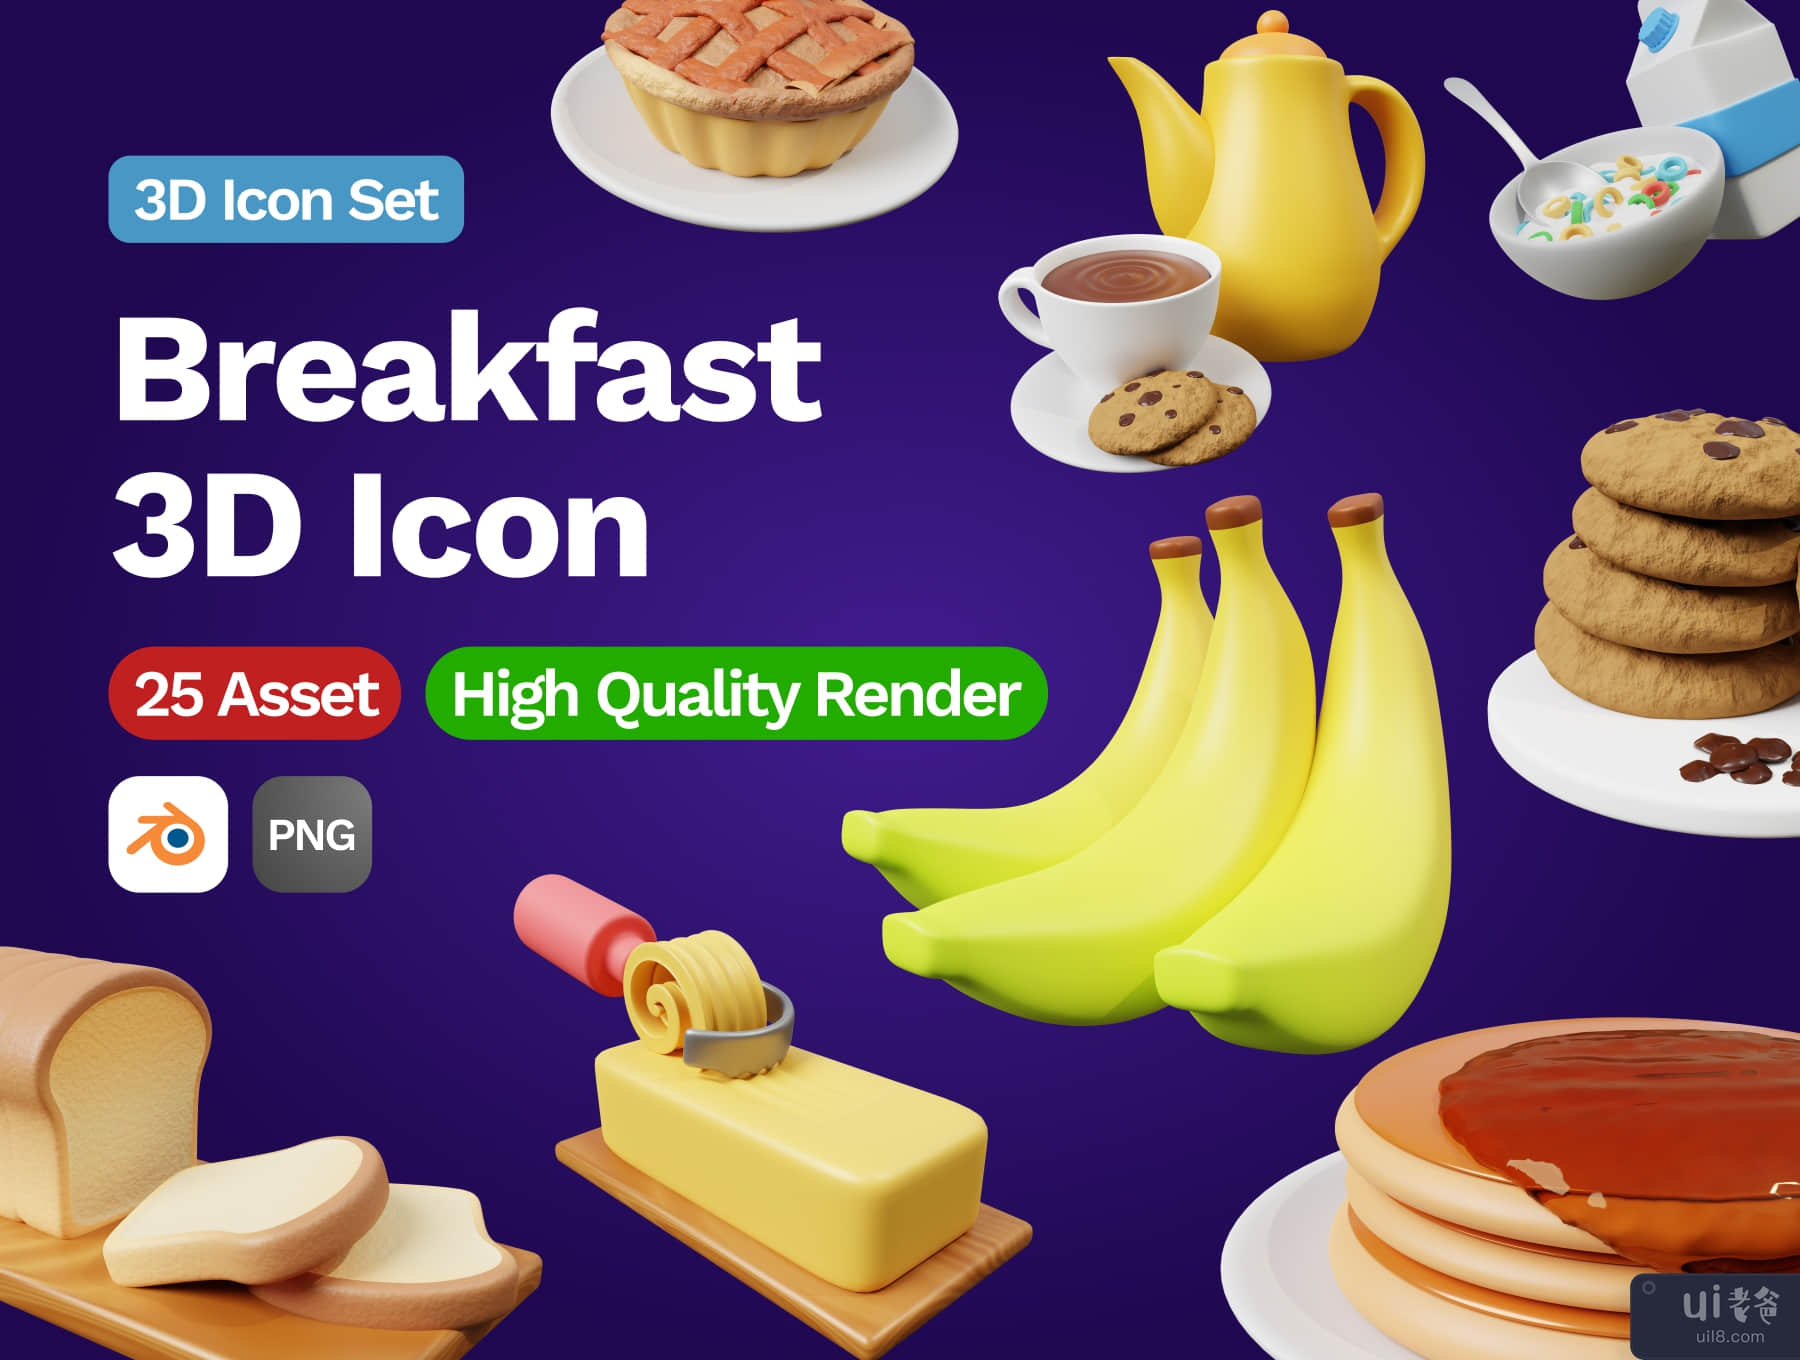 3D 早餐图标 (3D Breakfast Icon)插图5